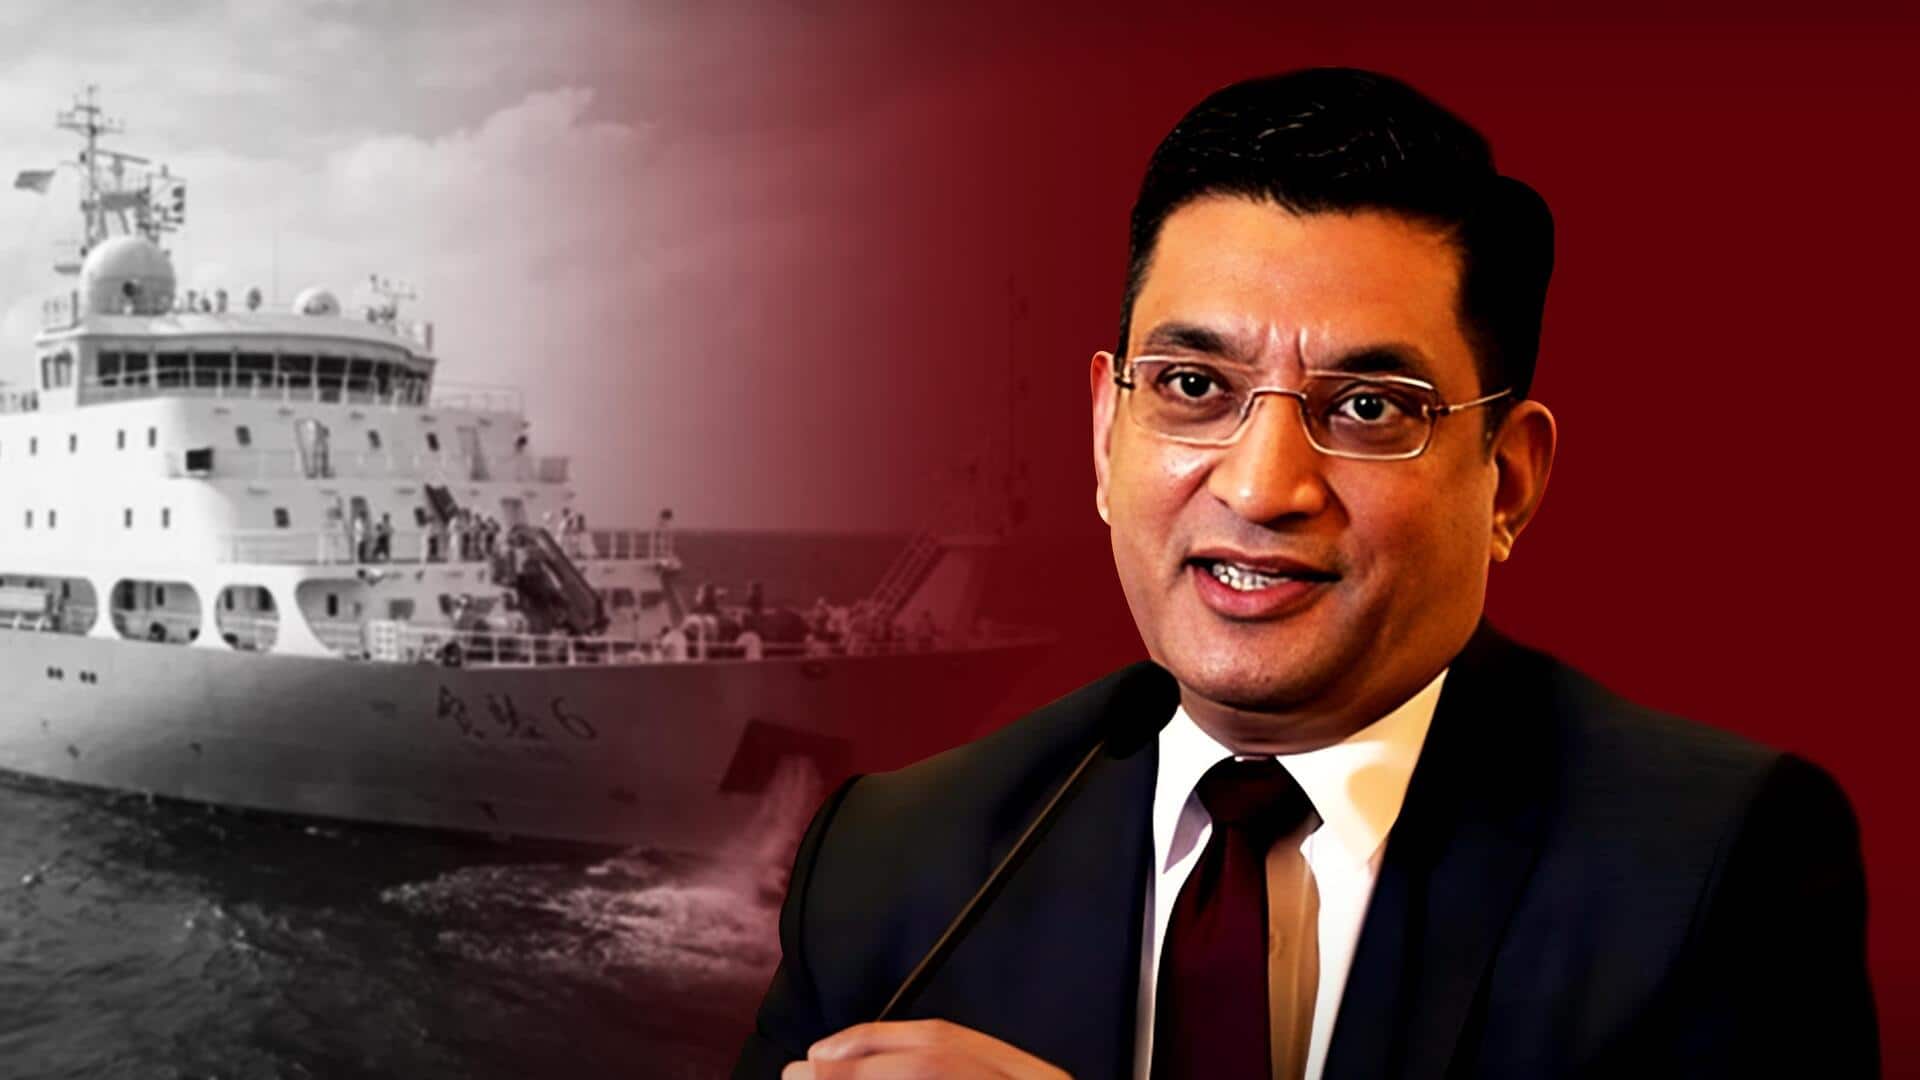 श्रीलंका बोला- चीनी जहाज को नहीं दी बंदरगाह पर रुकने की अनुमति, भारत की चिंताएं महत्वपूर्ण